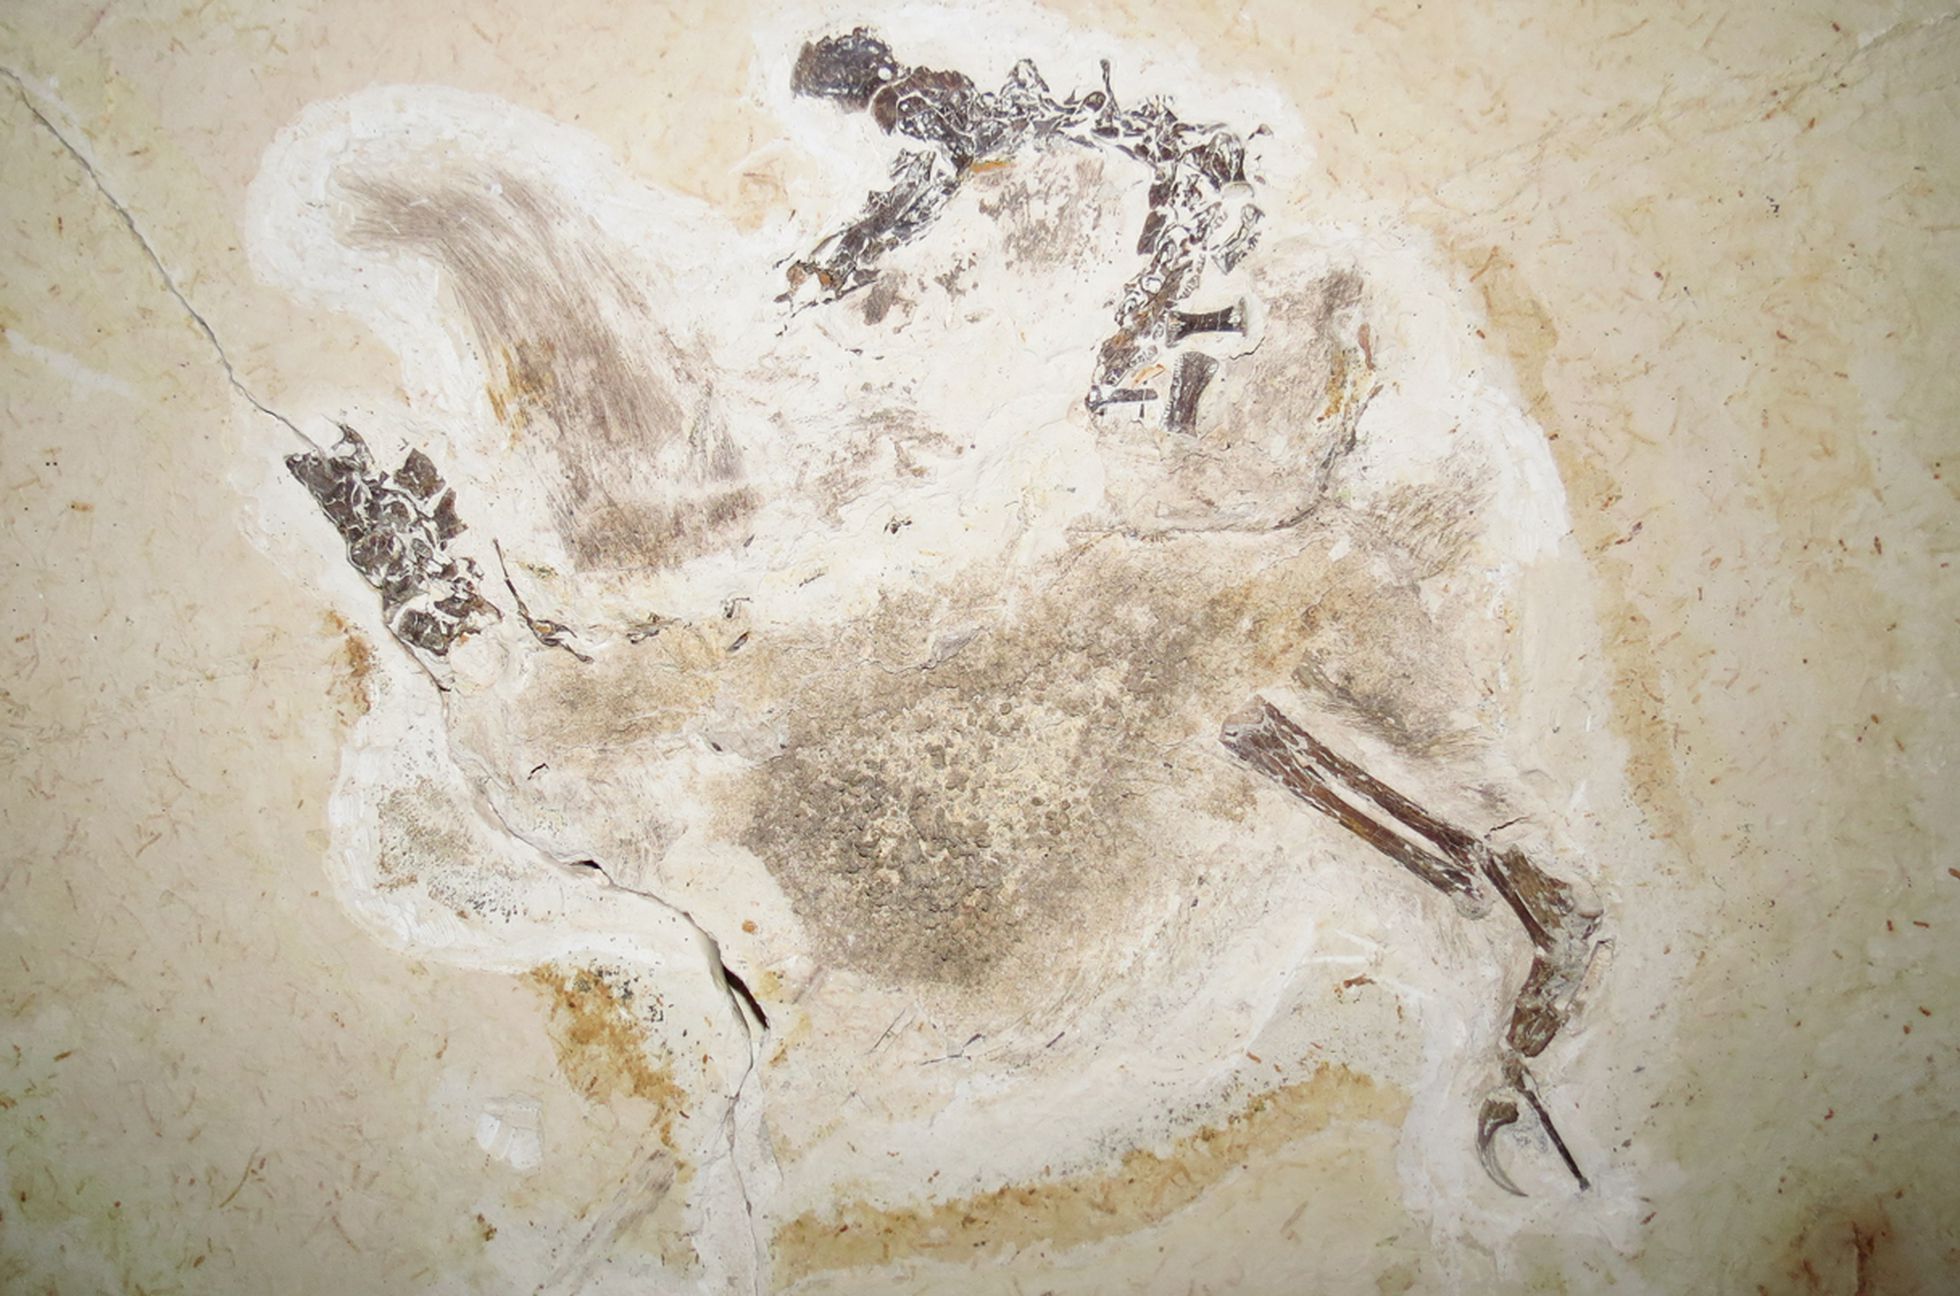 El dinosaurio que Brasil reclama es Ubirajara jubatus. Tenía el tamaño de una gallina, con una melena de pelo largo en la espalda y cintas rígidas que sobresalían de los hombros/ FELIPE LIMA PINHEIRO